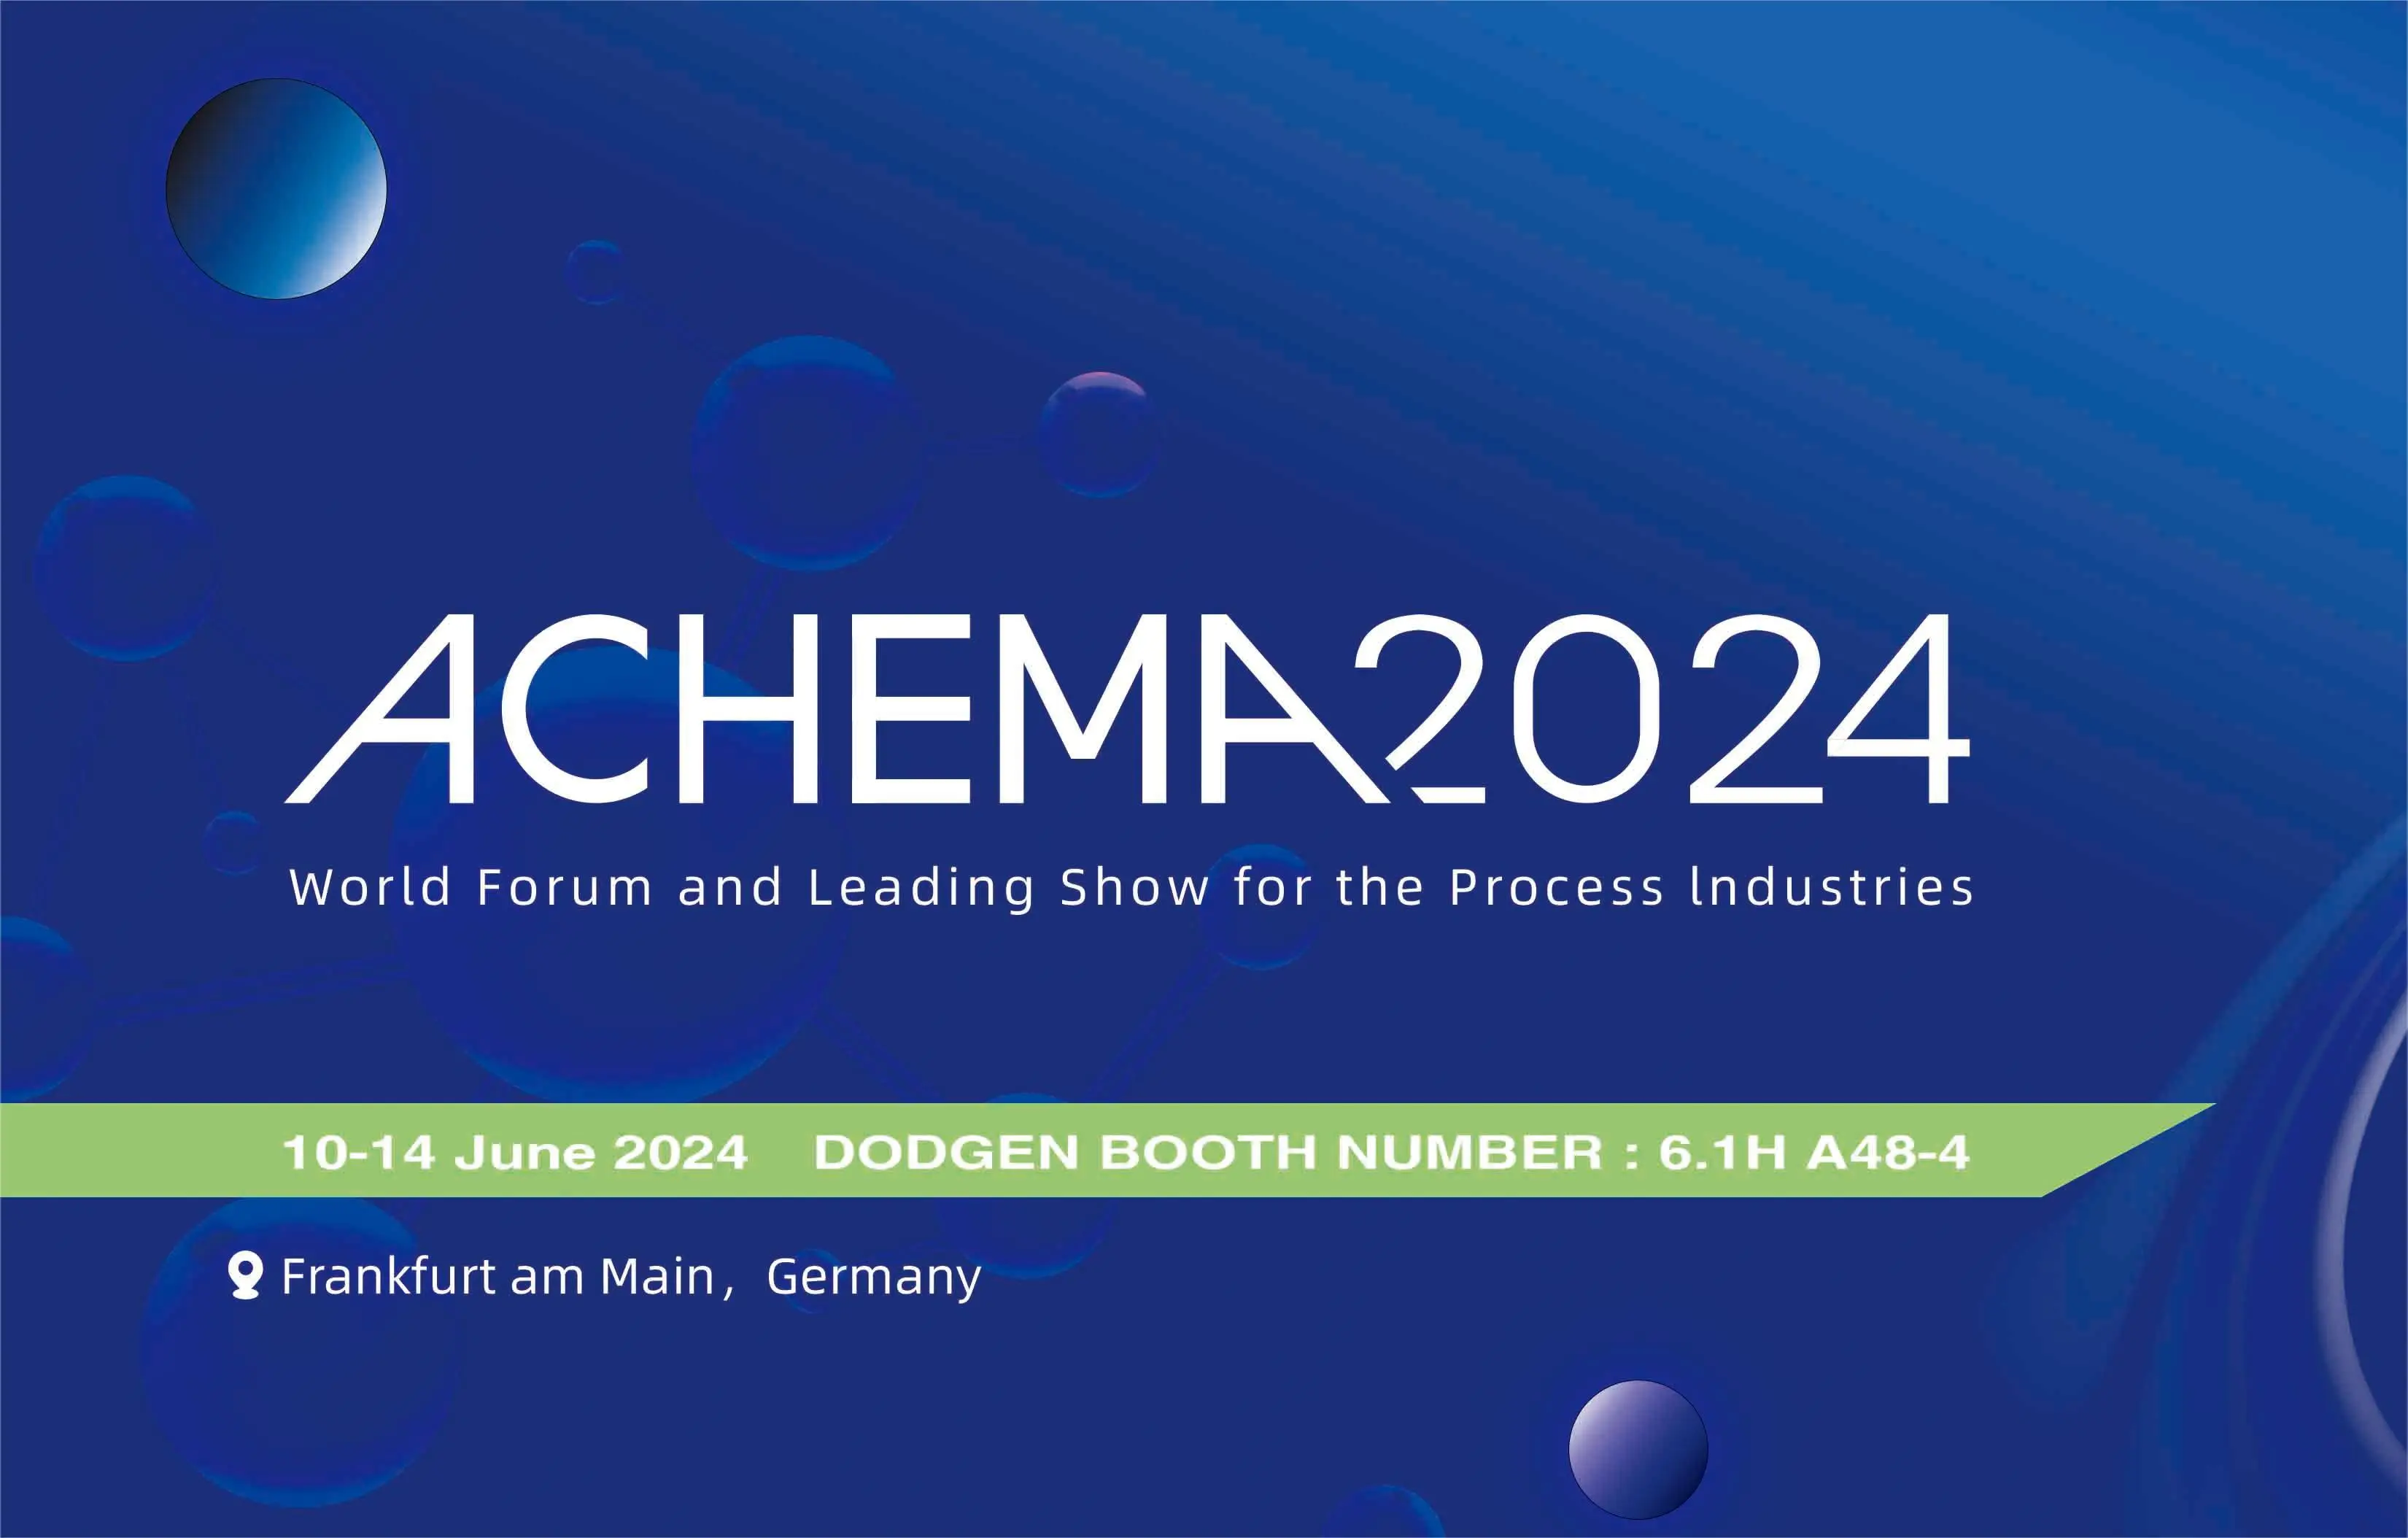 Invitation | DODGEN invites you to visit ACHEMA 2024